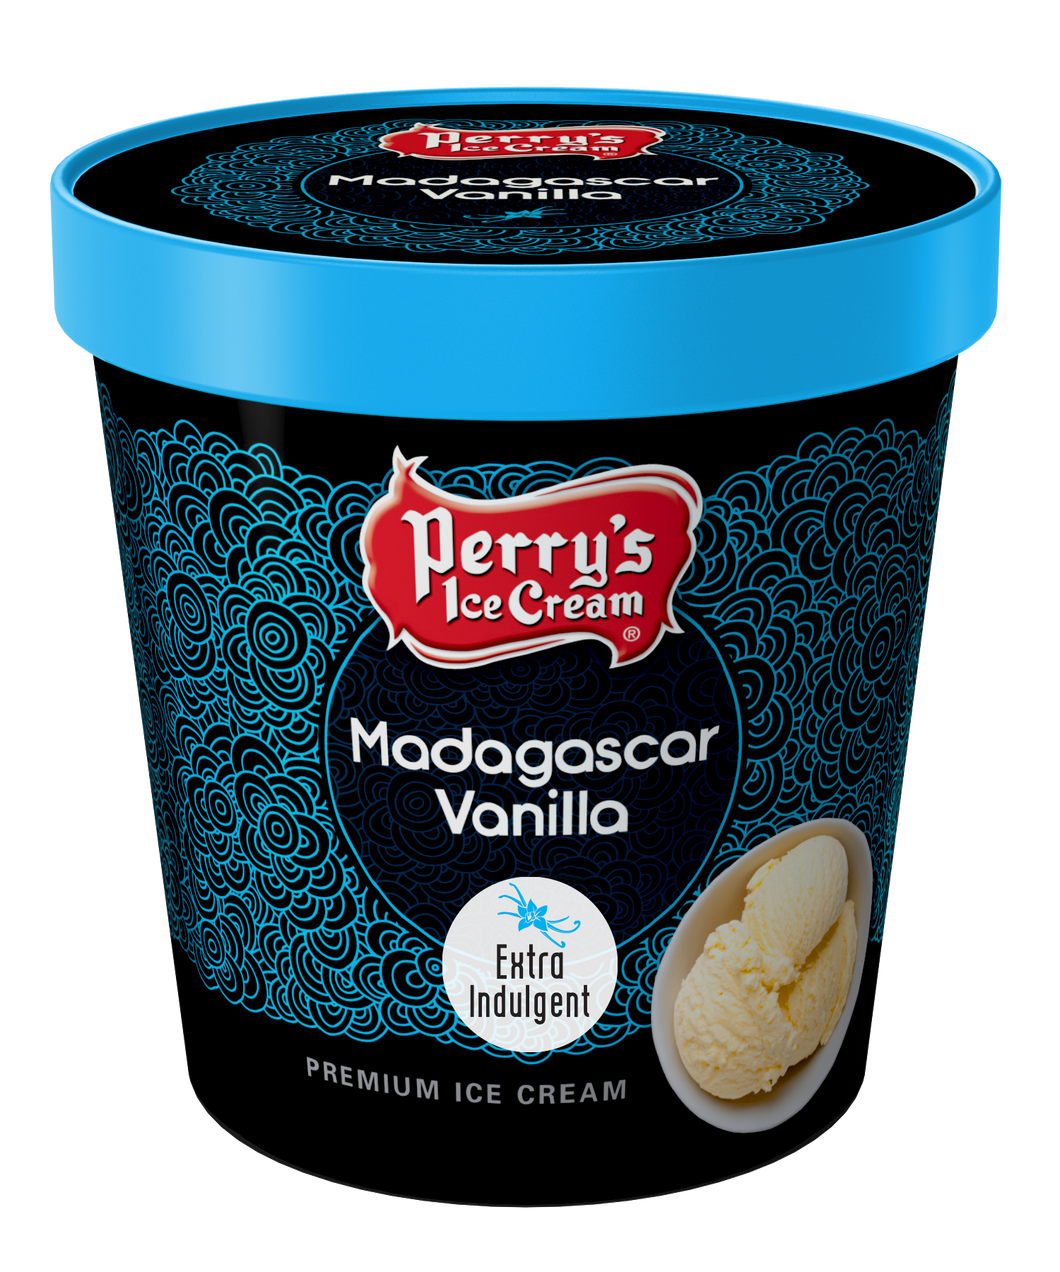 Madagascar Vanilla ice cream